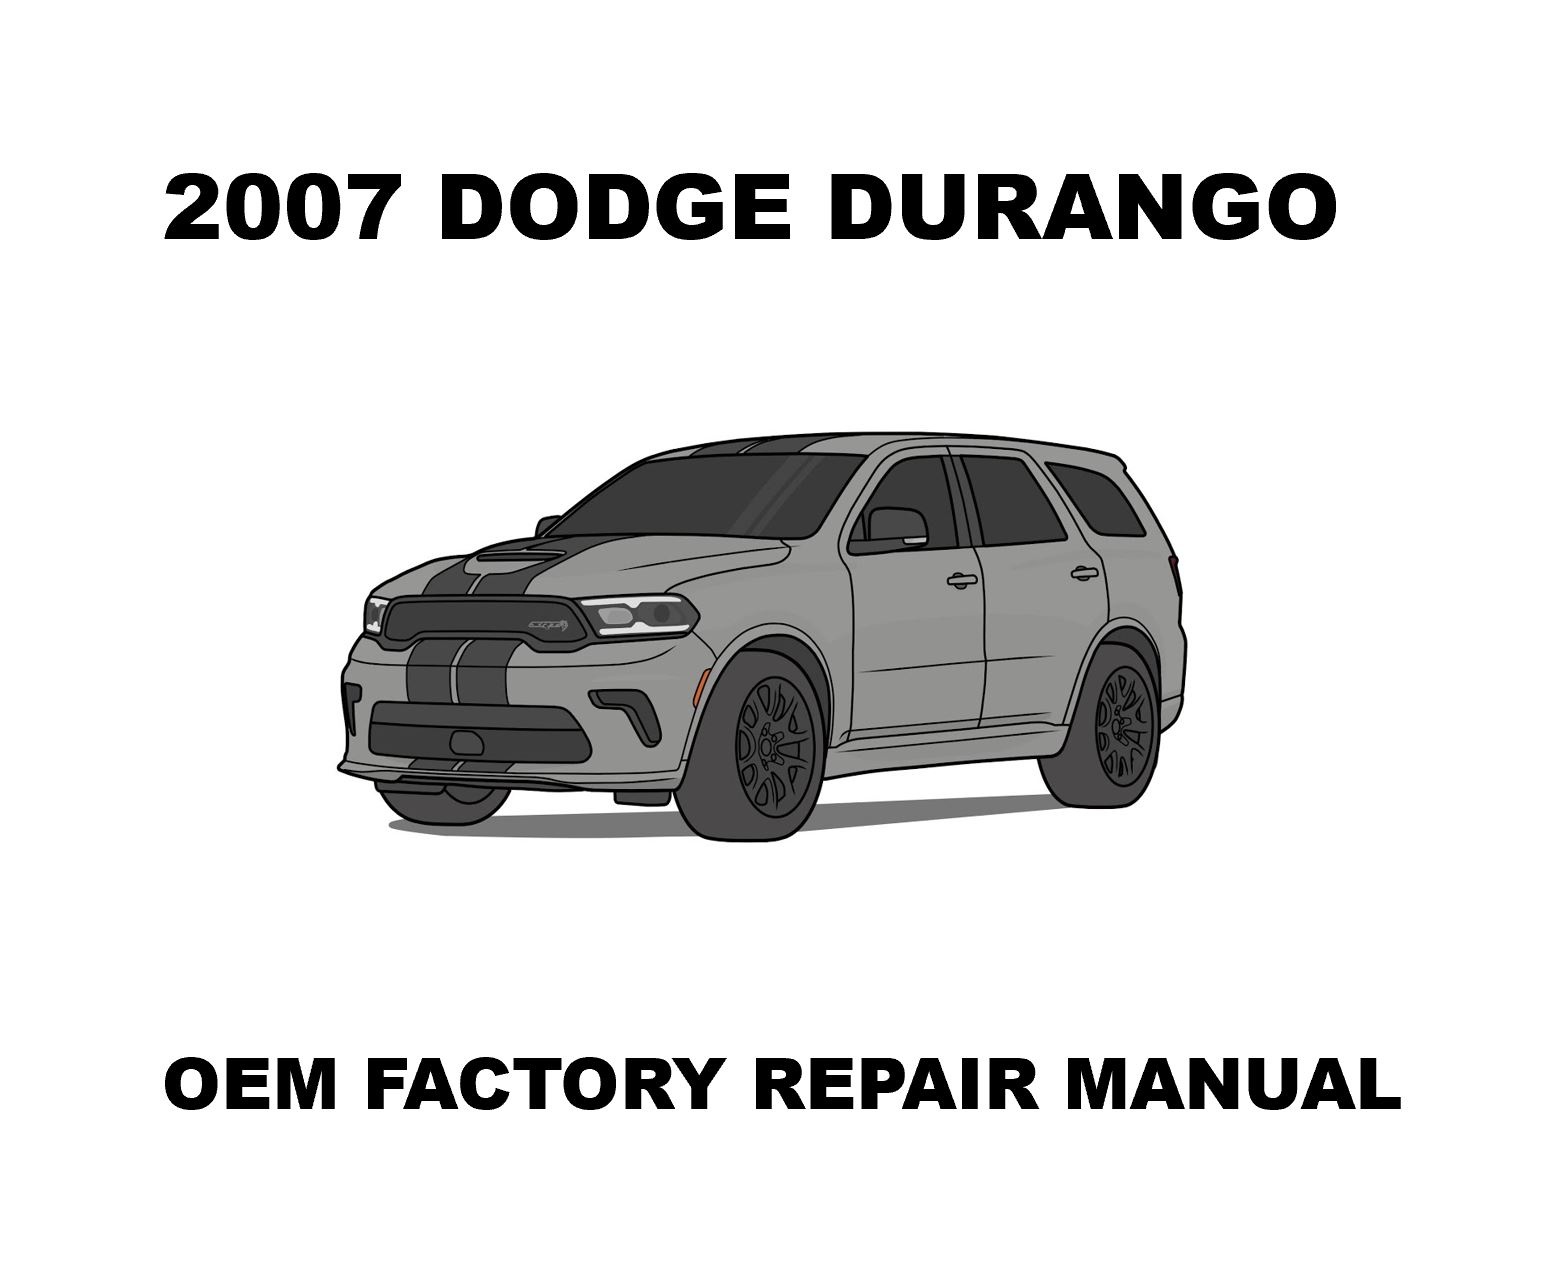 2007_dodge_durango_repair_manual_1551